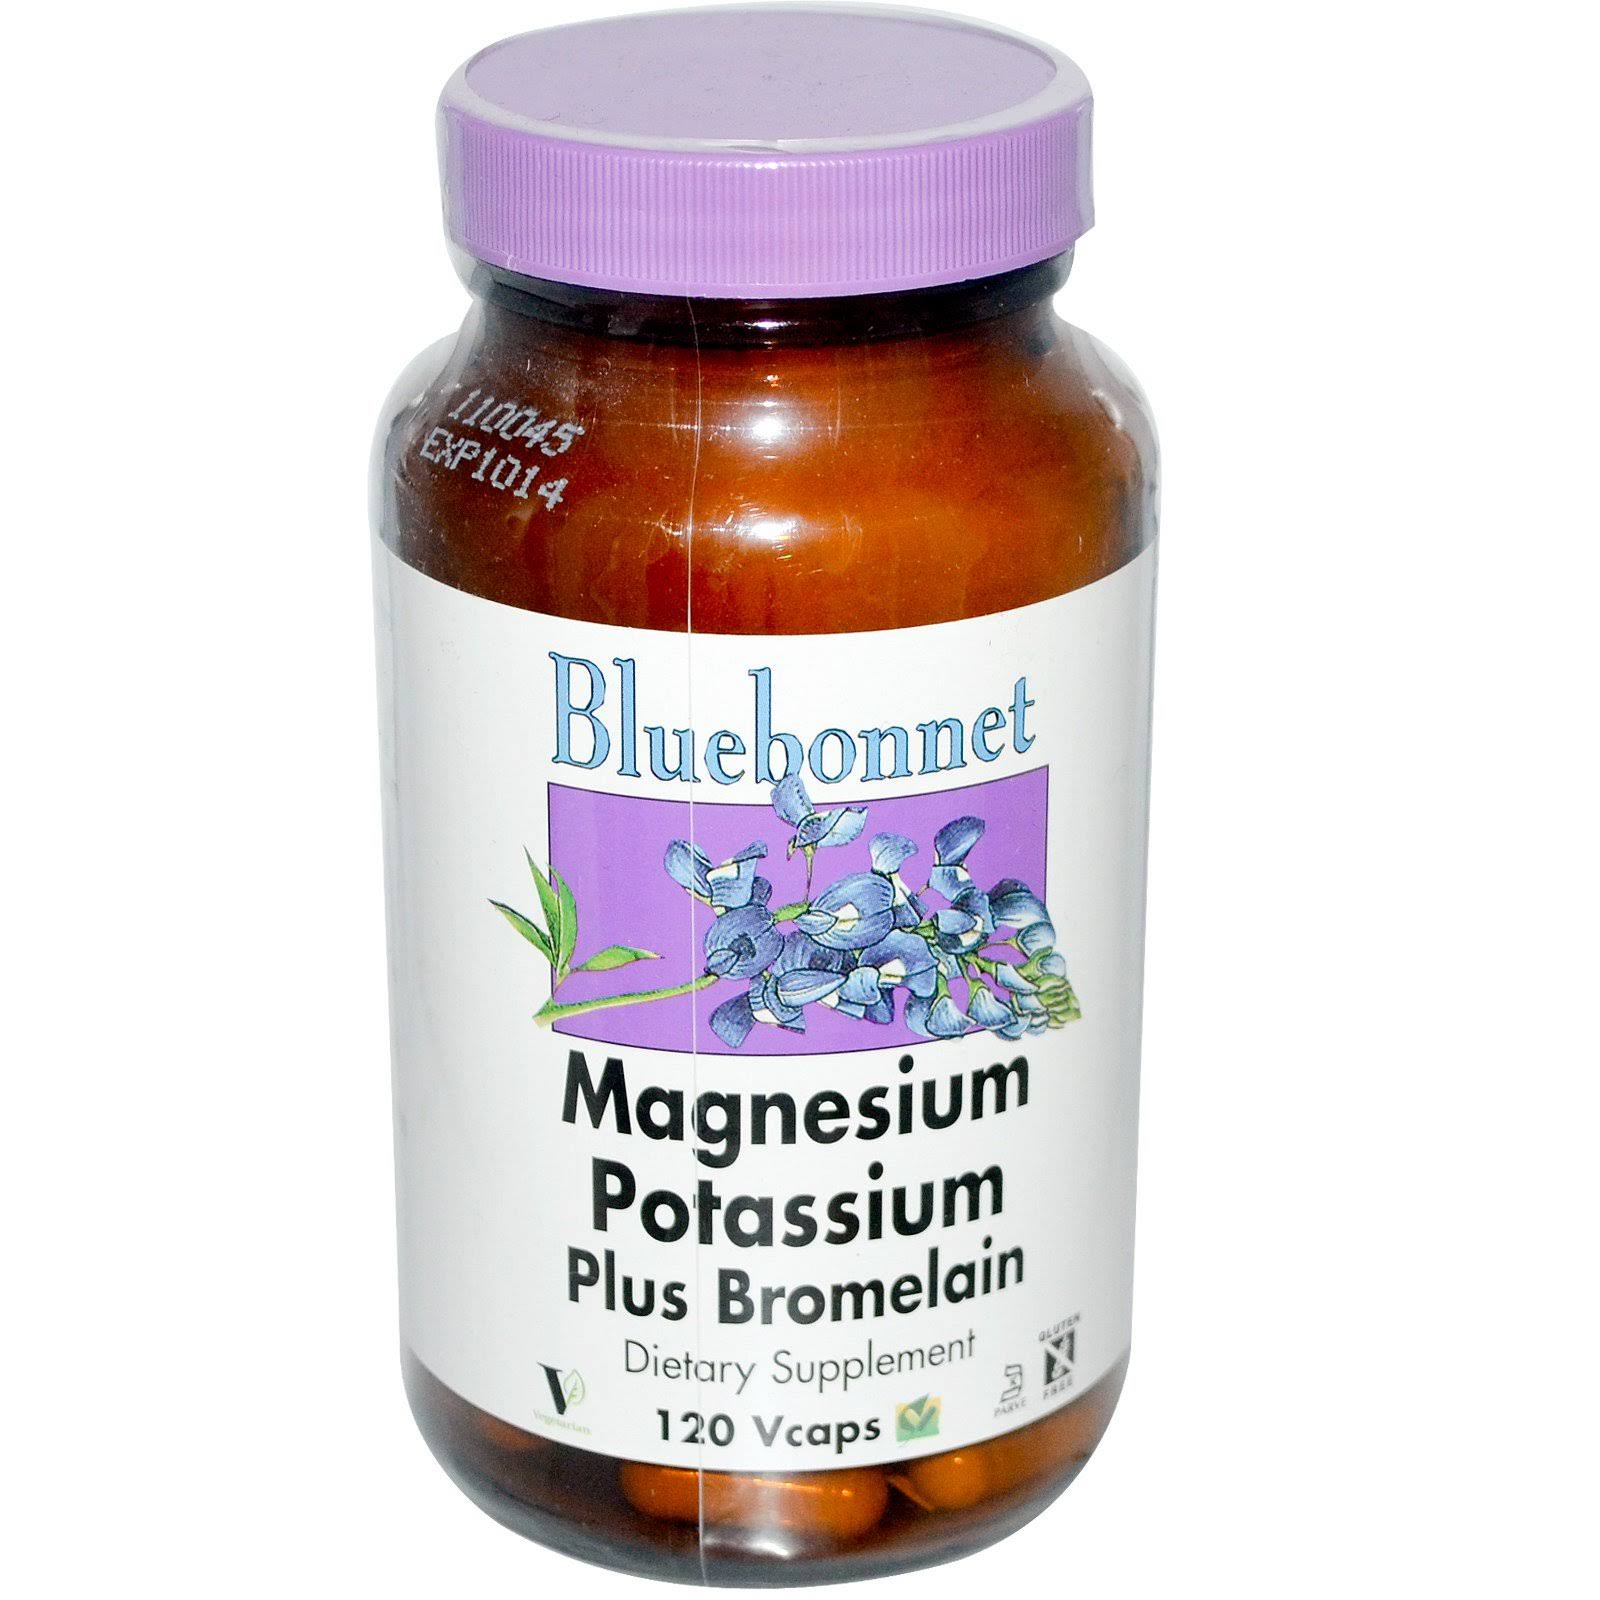 Bluebonnet Nutrition Magnesium Potassium Plus Bromelain Supplement - 120 Vcaps